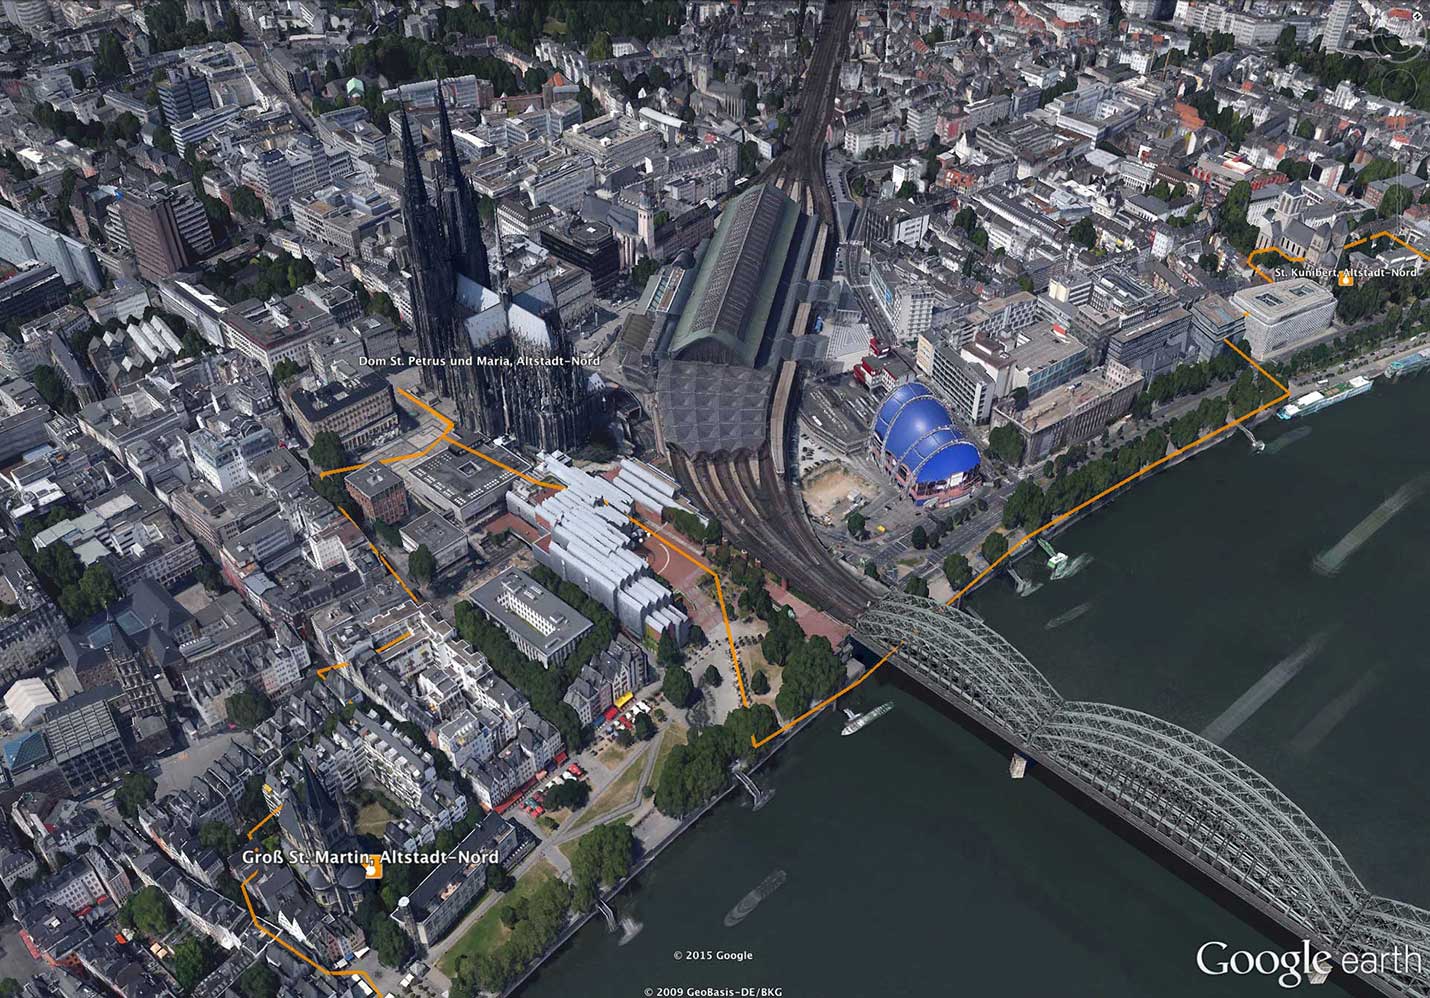 Erzbistum Köln / pfarr-rad > Importierte und aufgearbeitete Fahrradtouren mit allen Optionen optimiert für Google Earth 3D